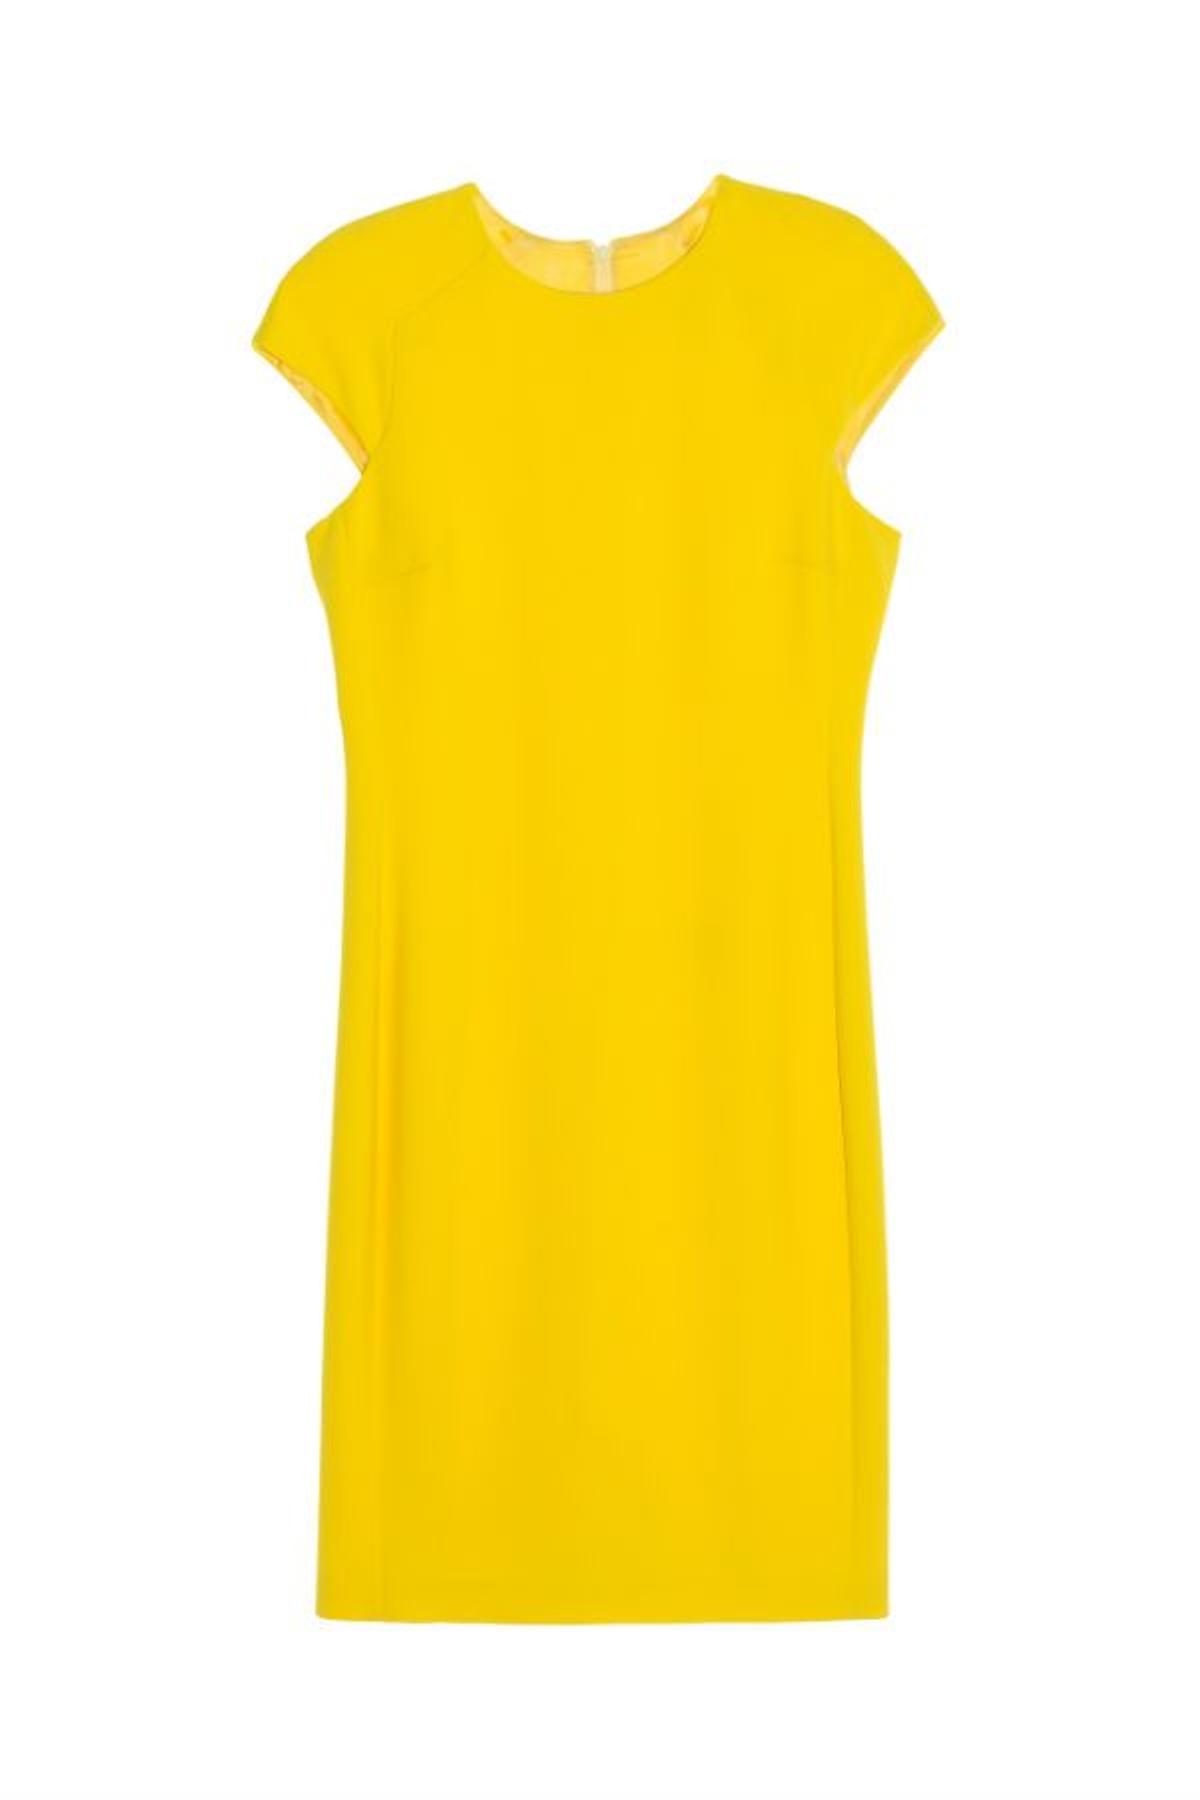 Prendas y complementos en amarillo: vestido de Alba Conde